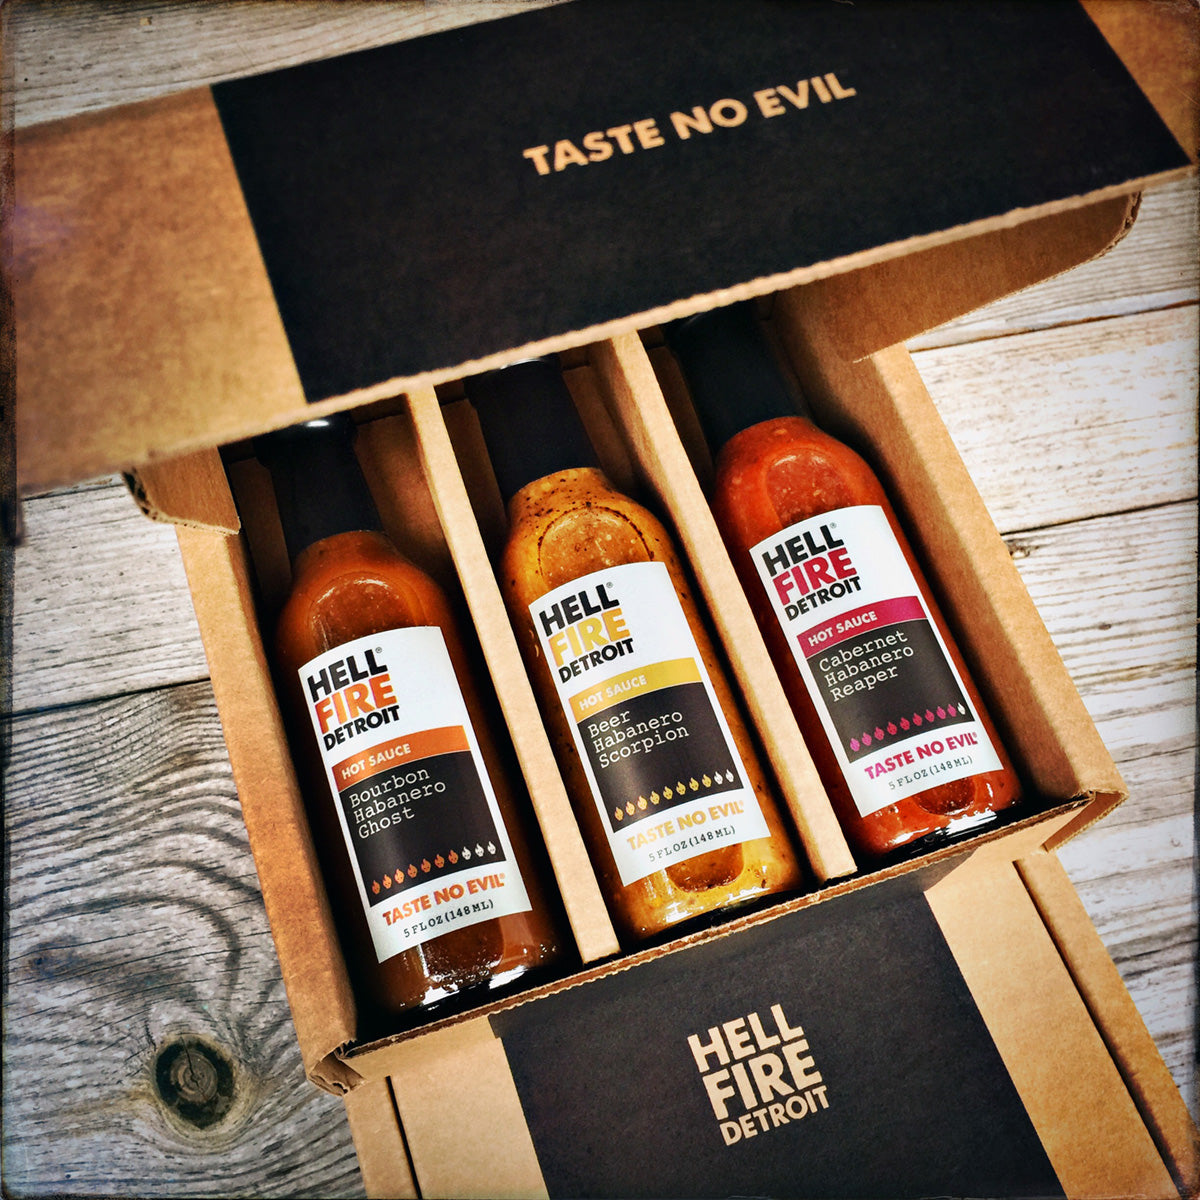 Hell Fire Detroit – Best Small Batch Hot Sauce. Taste No Evil.